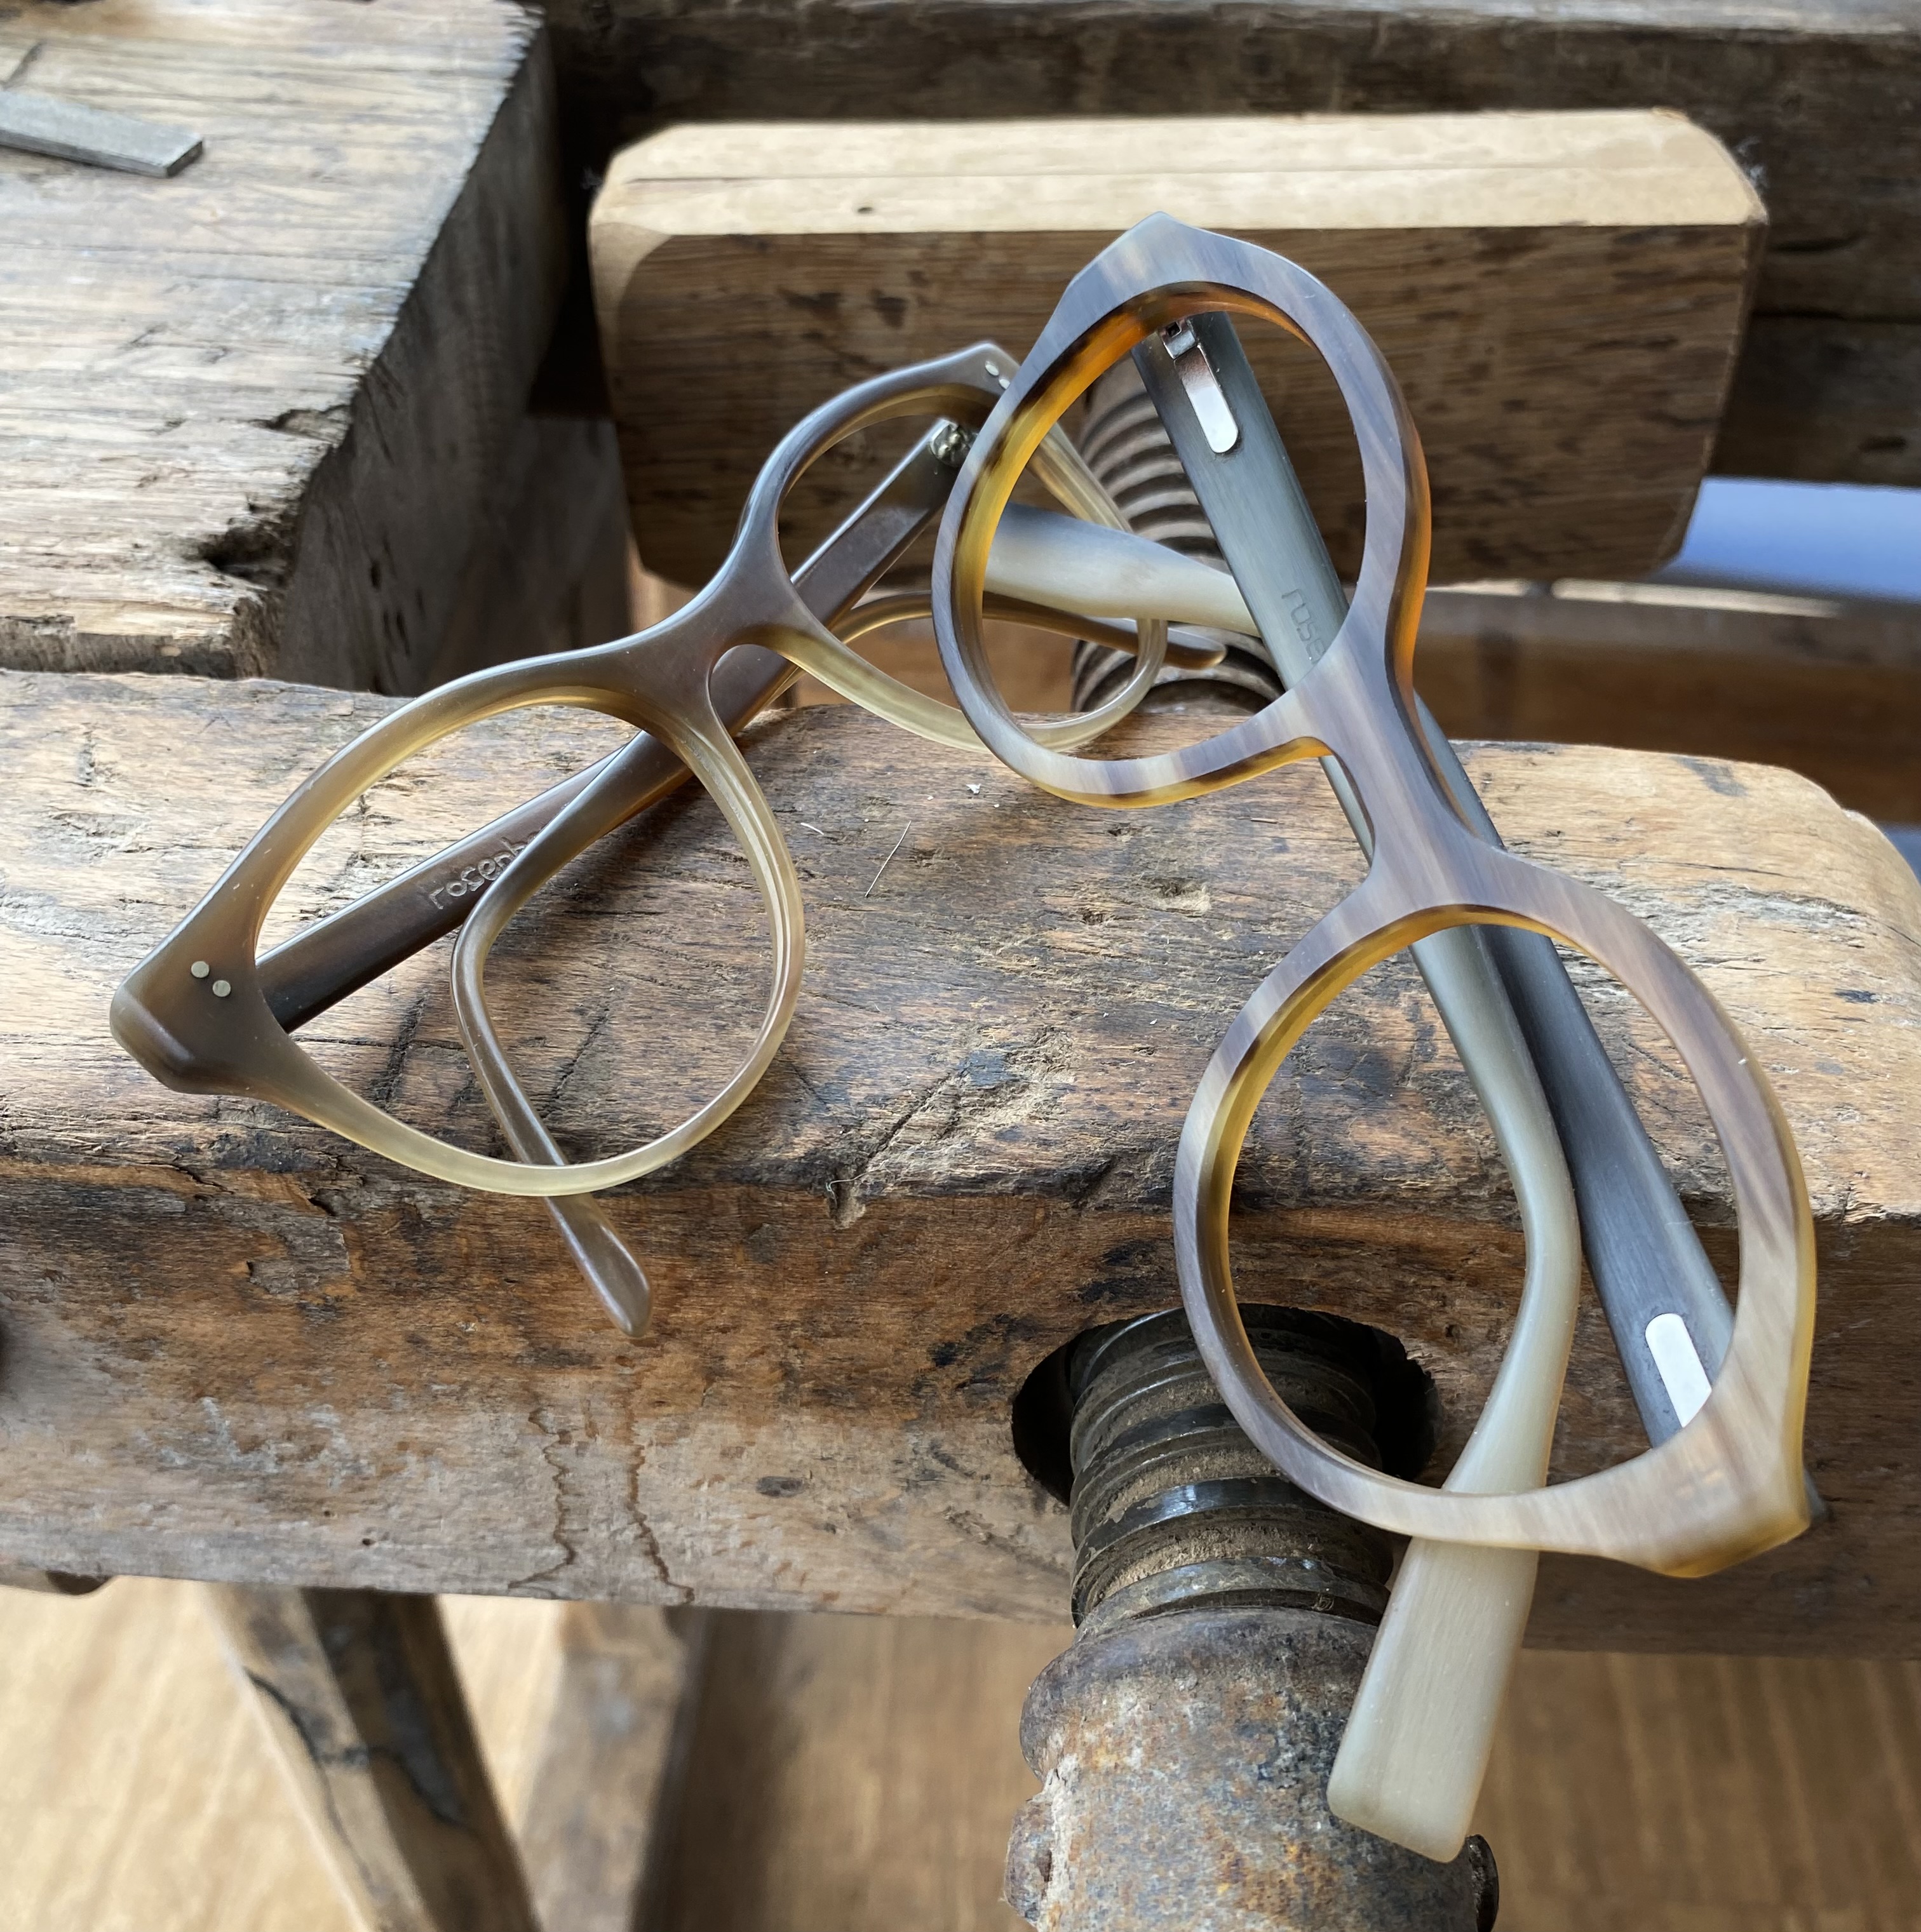 500-Euro-Gutschein für Brillen nach Maß von Optik Rosenberger